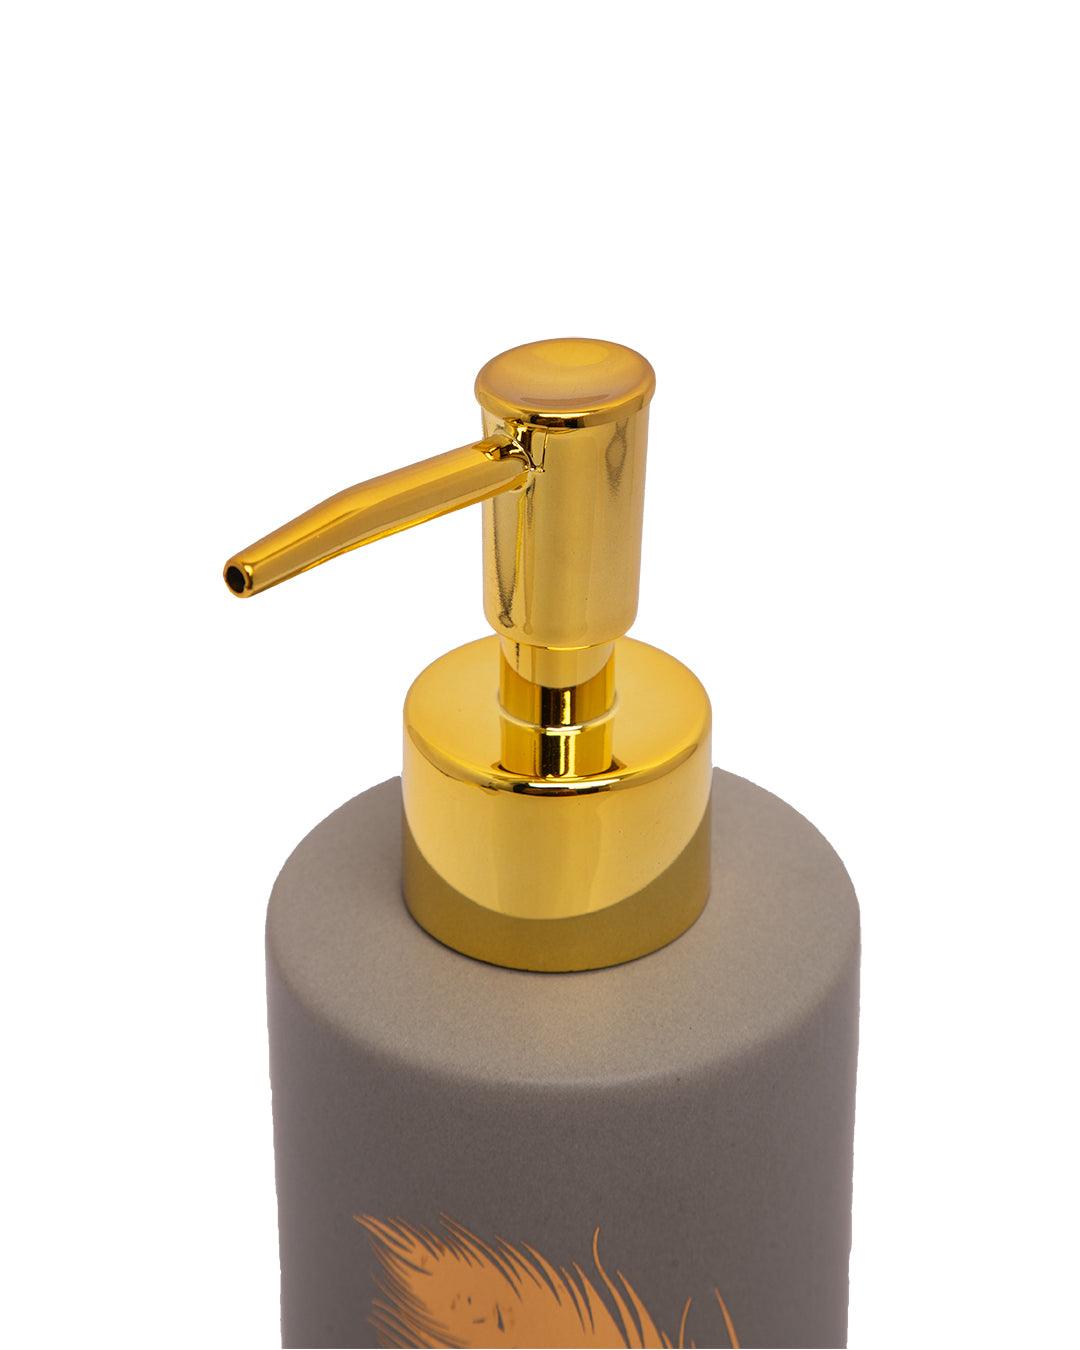 Soap Dispenser, Golden Design, Grey, Ceramic, 350 mL - MARKET 99